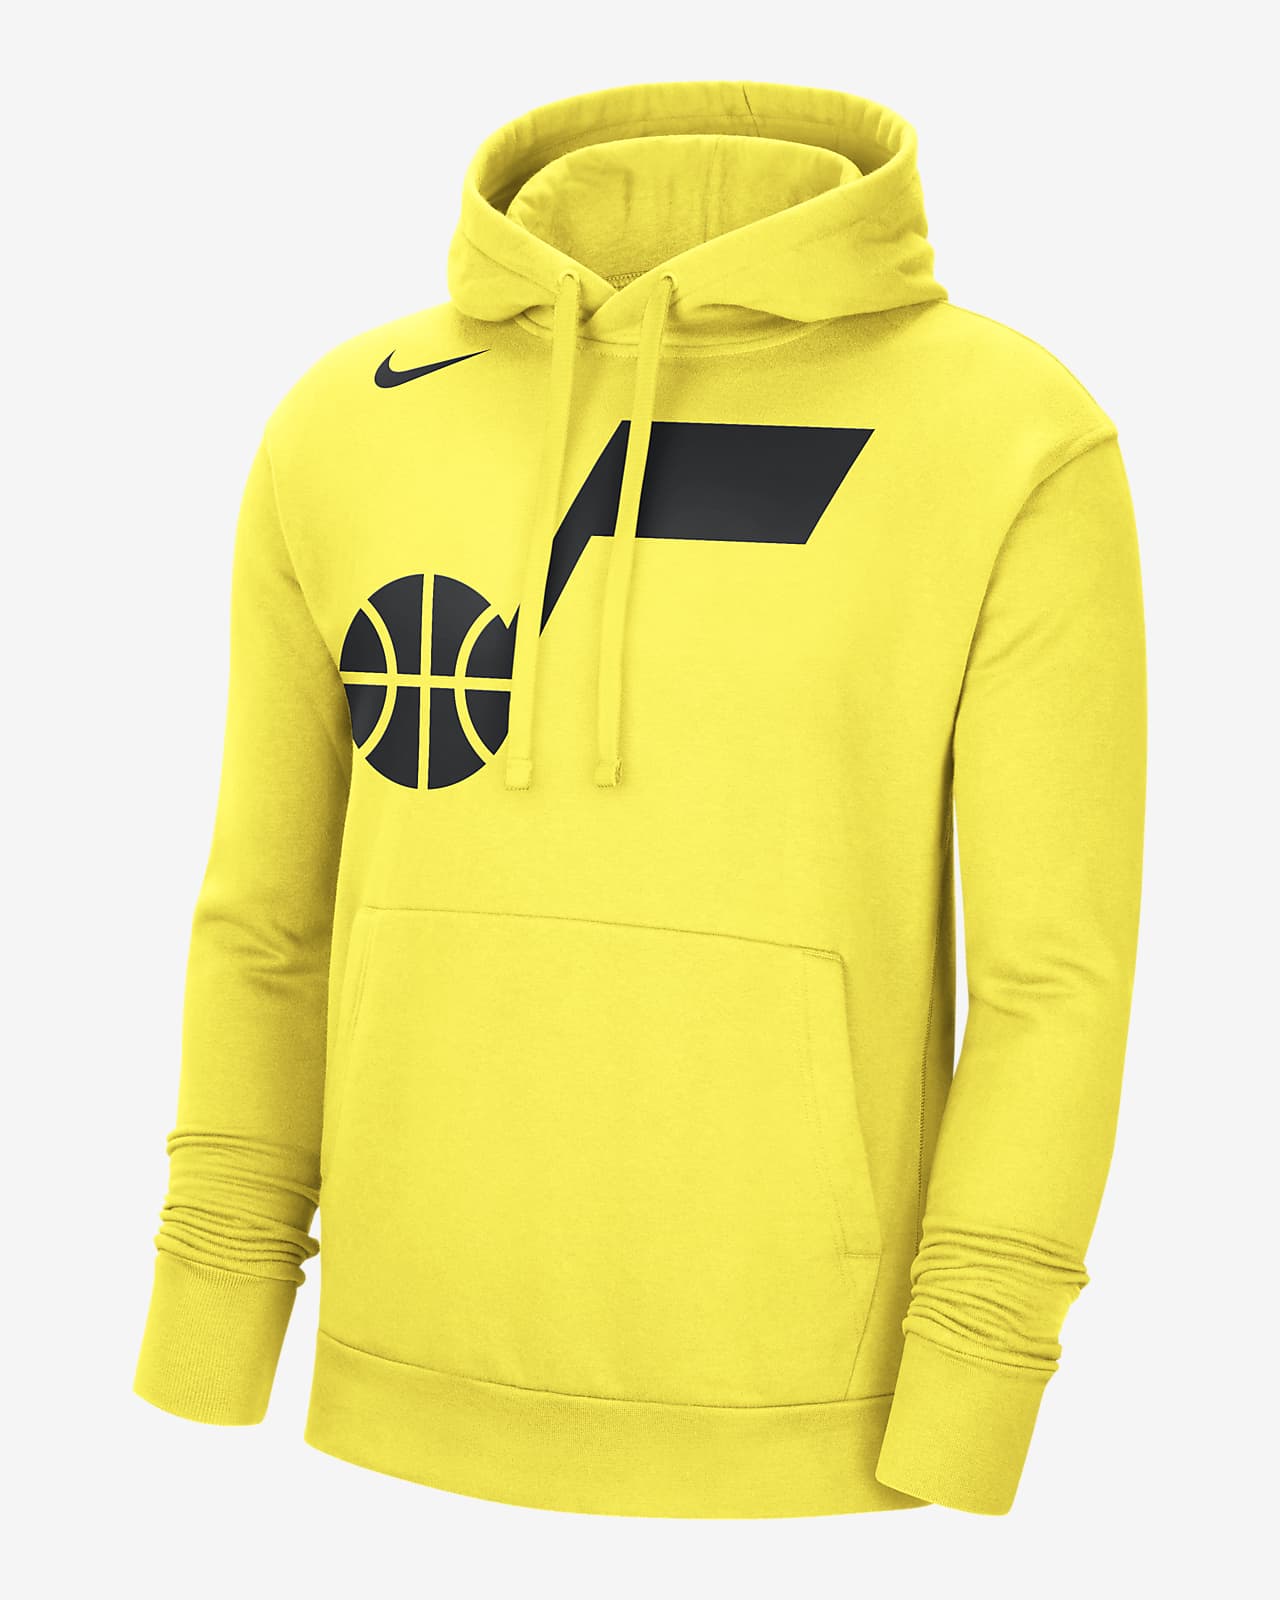 Utah Jazz Nike NBA Fleece Pullover Hoodie. Nike.com